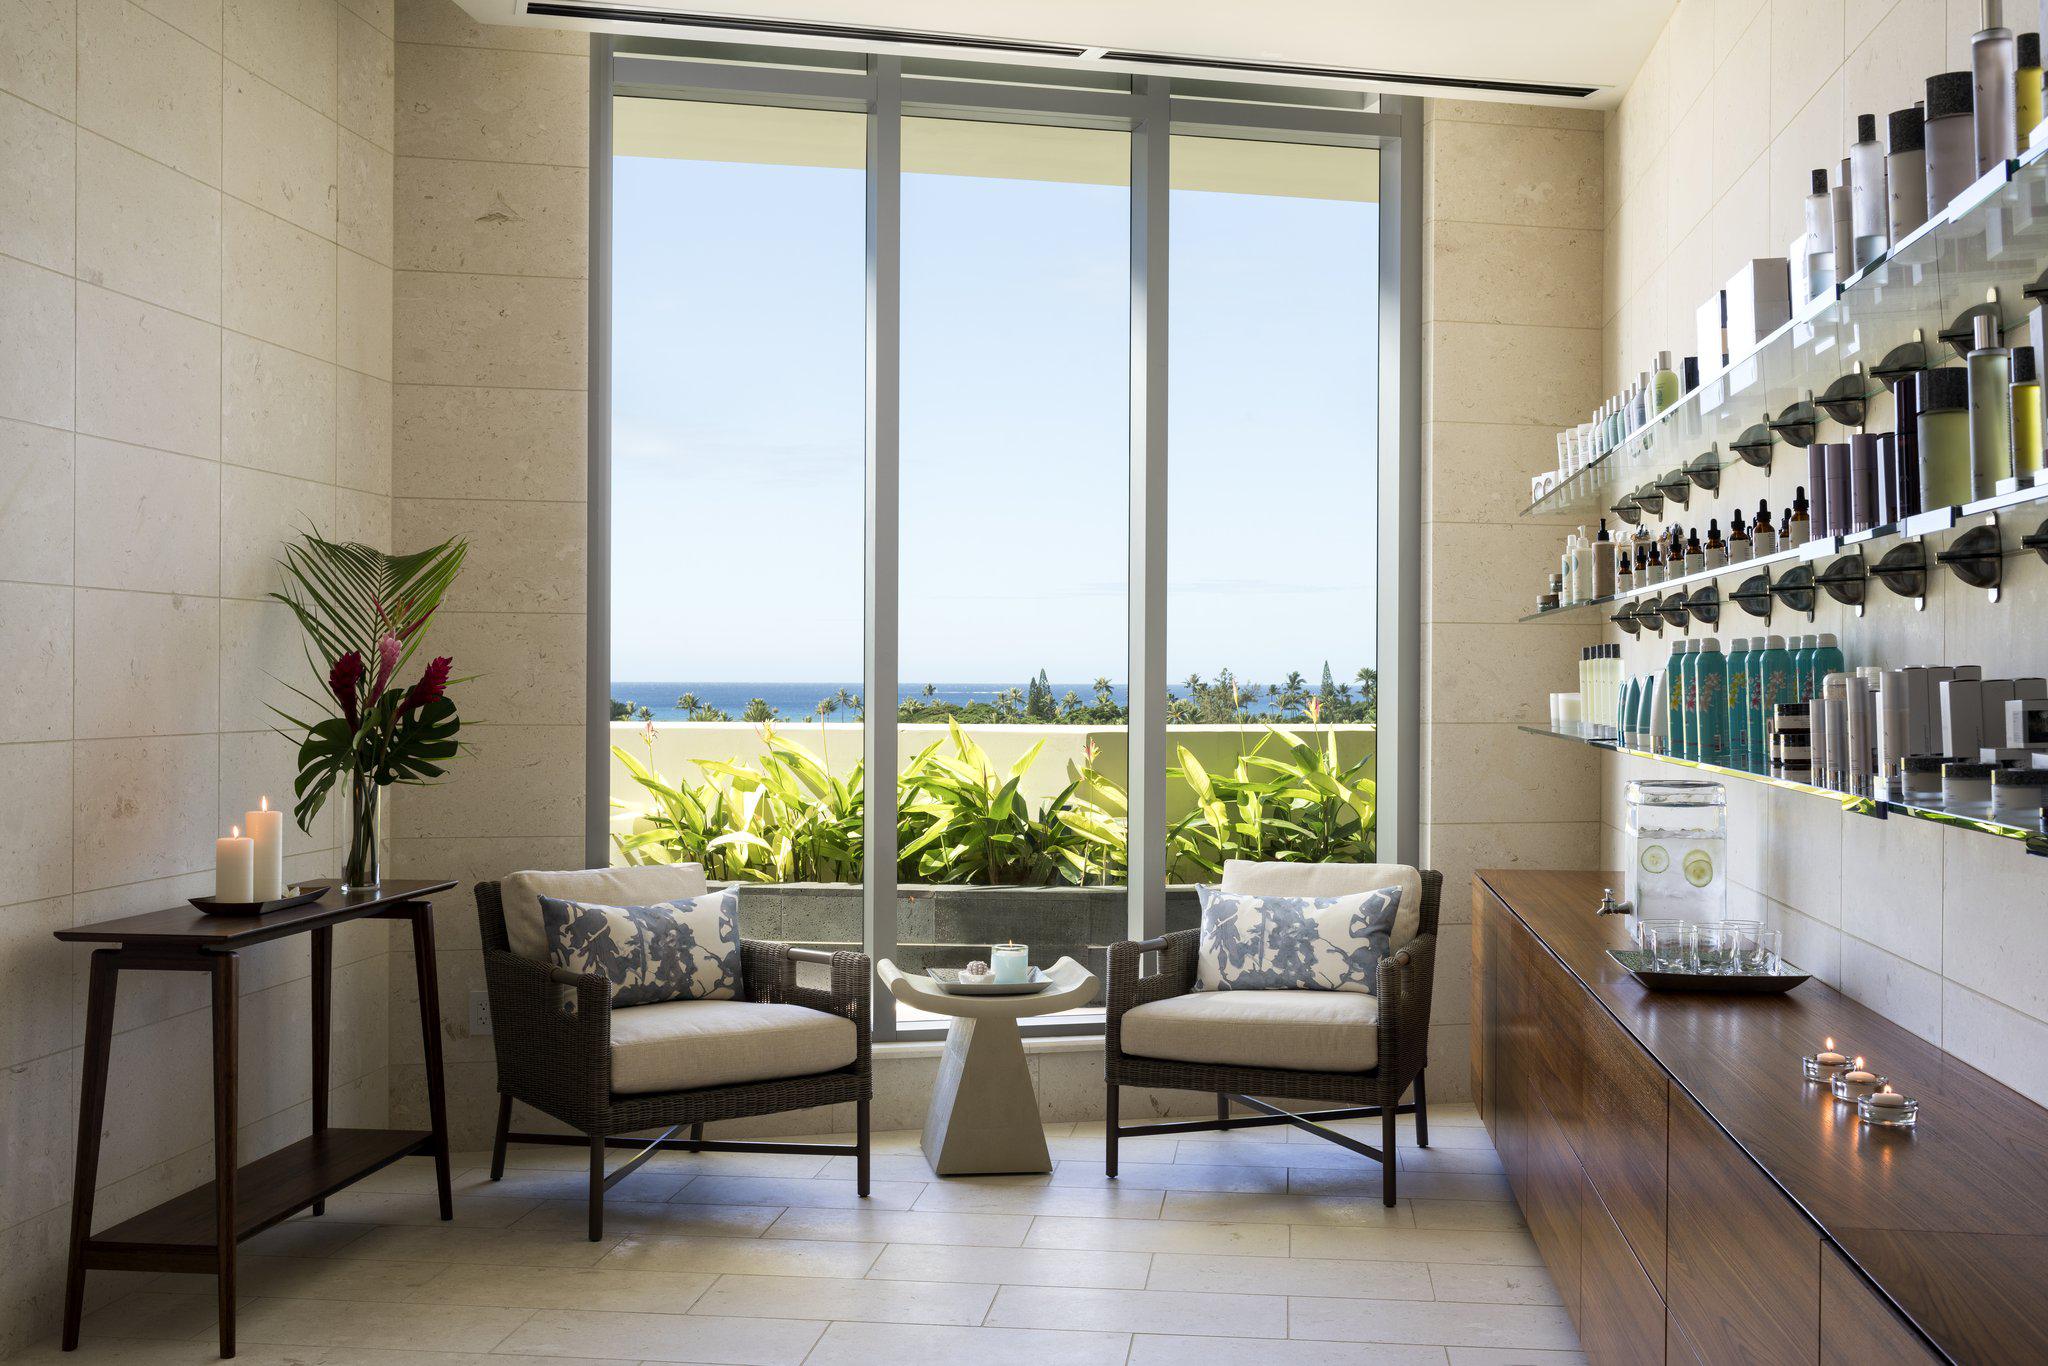 The Ritz-Carlton Residences, Waikiki Beach Photo